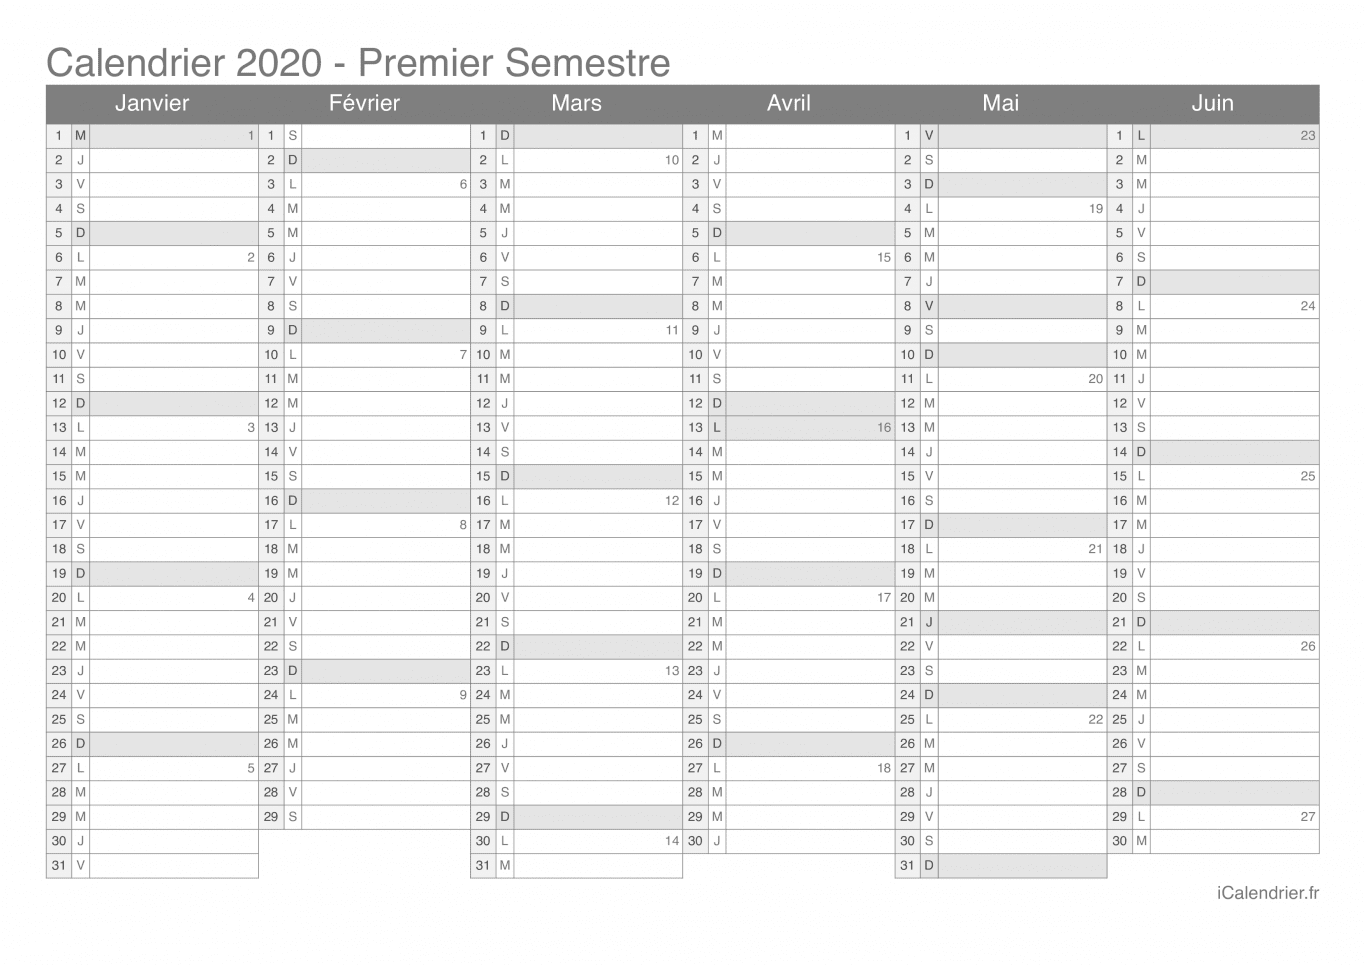 Calendrier par semestre avec numéros des semaines 2020